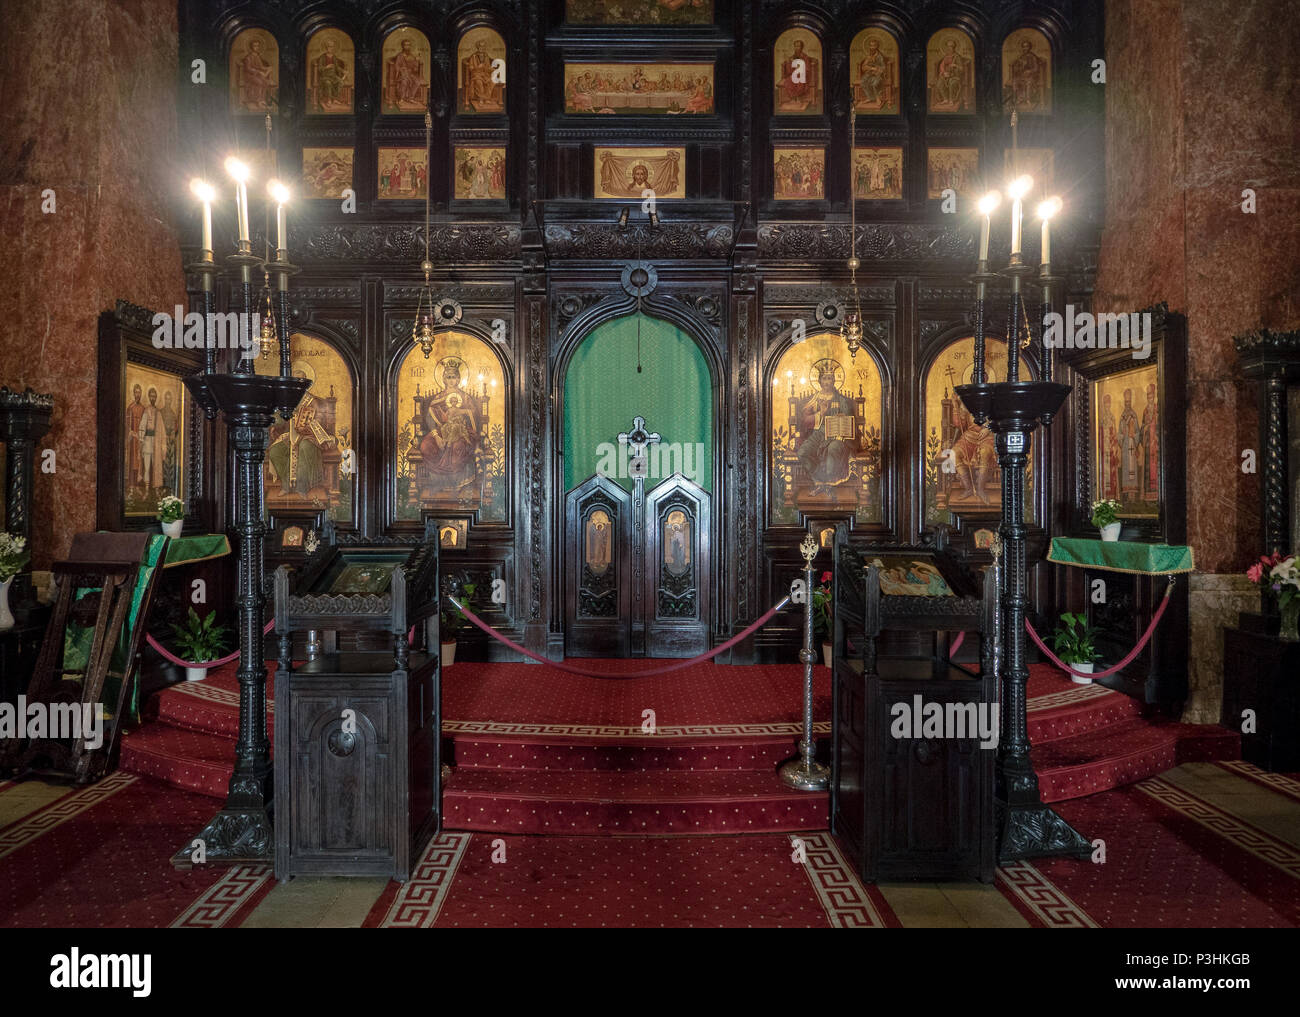 Coronation Cathedral interior in Alba Iulia, Romania Stock Photo